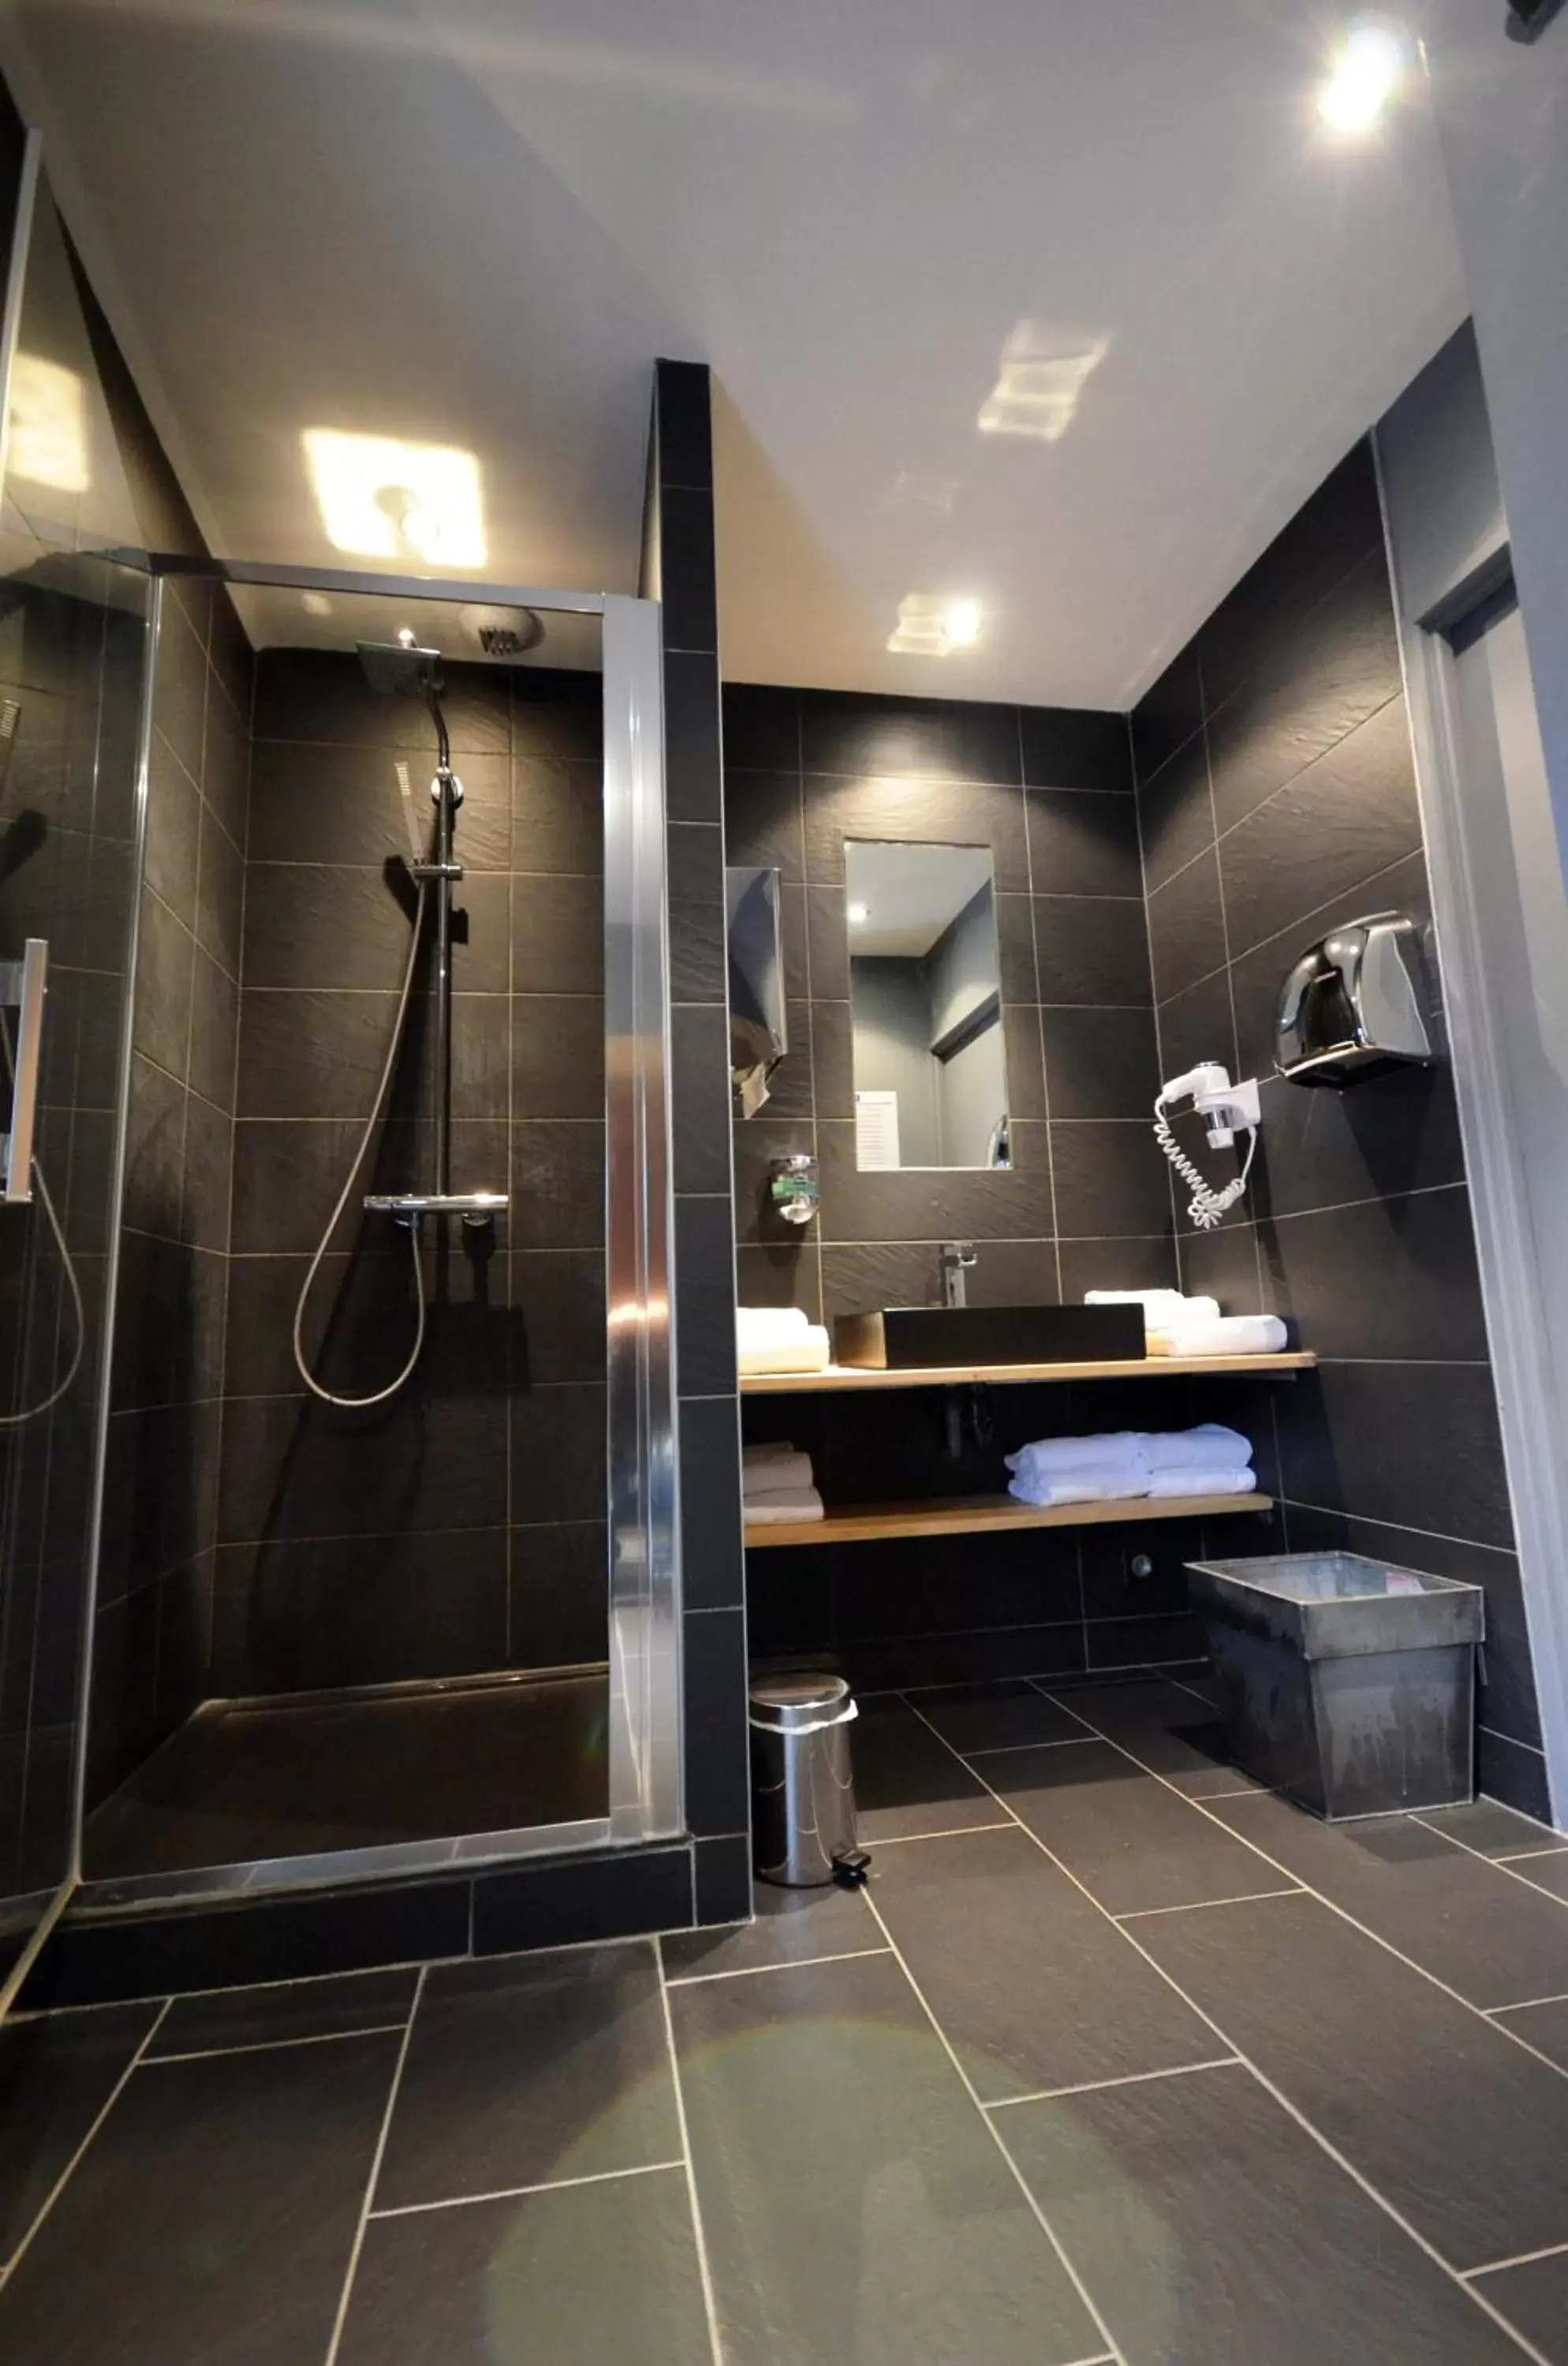 Spa and wellness centre/facilities, Bathroom in Kyriad Dijon Est Mirande